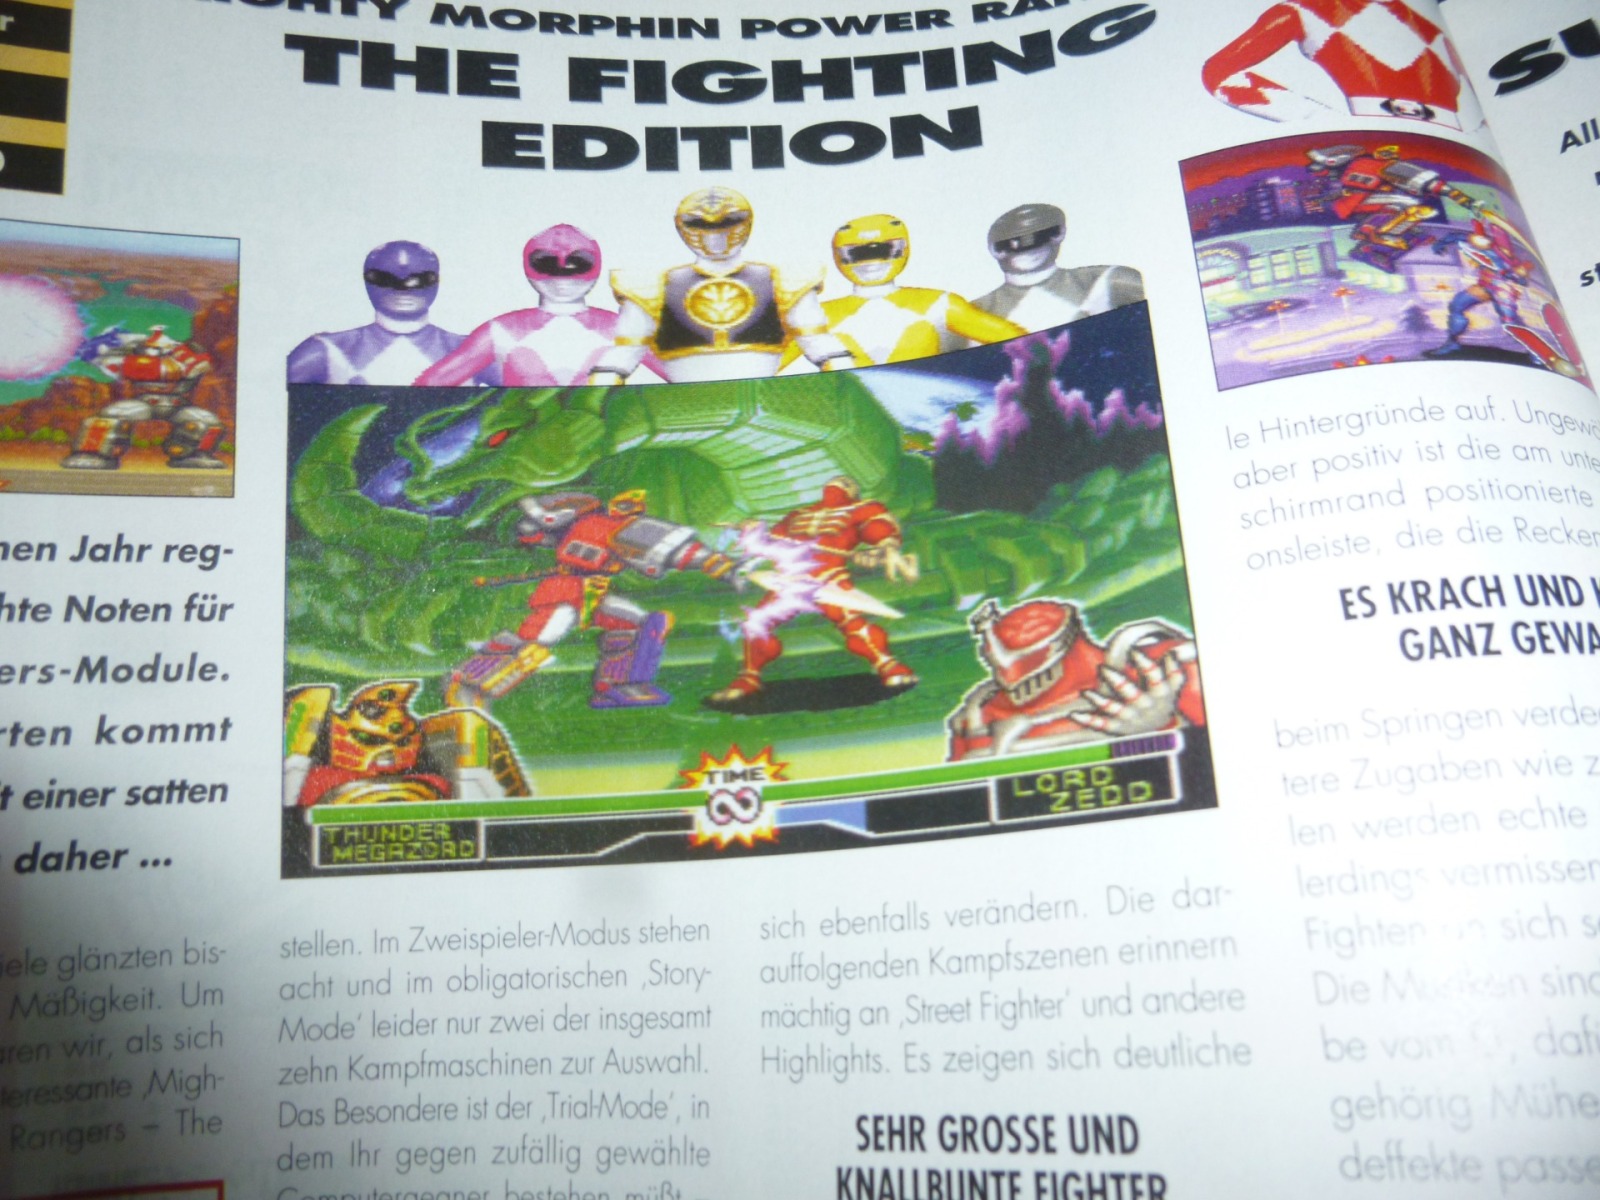 TOTAL Das unabhängige Magazin - 100 Nintendo - Ausgabe 2/96 1996 14